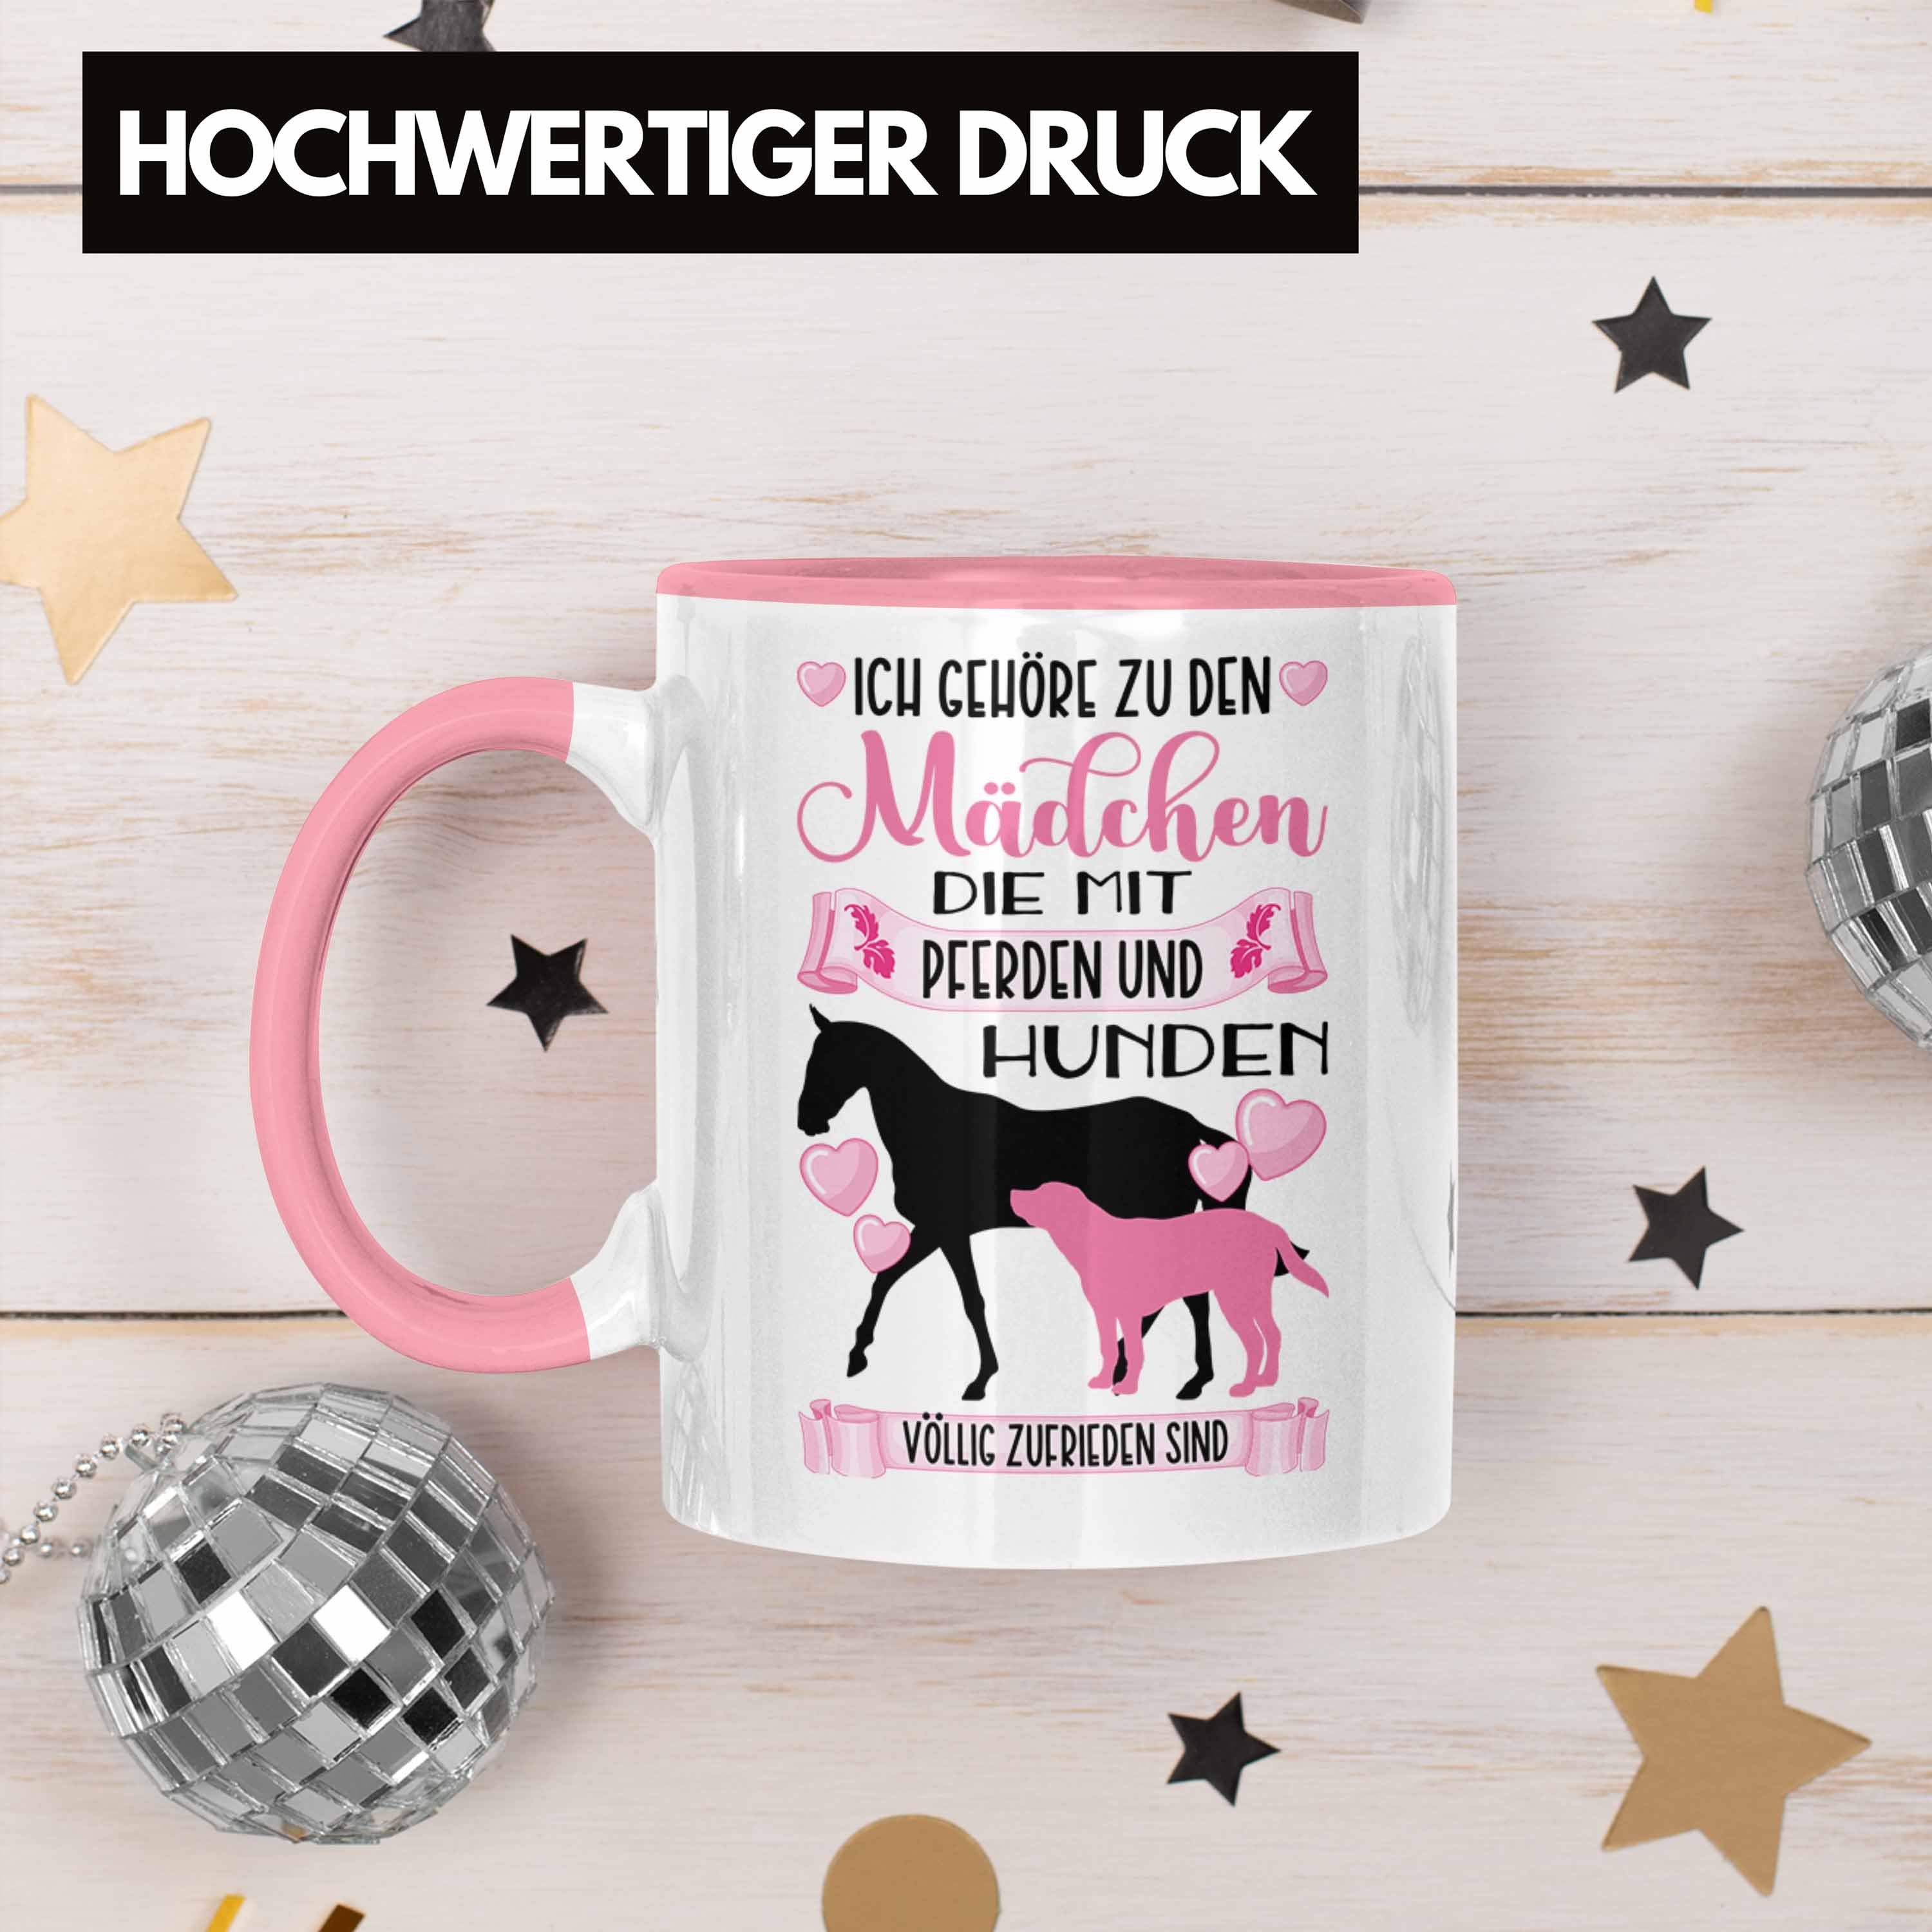 Reiterin Mädchen Tasse Trendation Reiten Tasse Lustiger Geschenkidee Spruch Rosa Pferd Hund Trendation - Geschenk Kaffeetasse